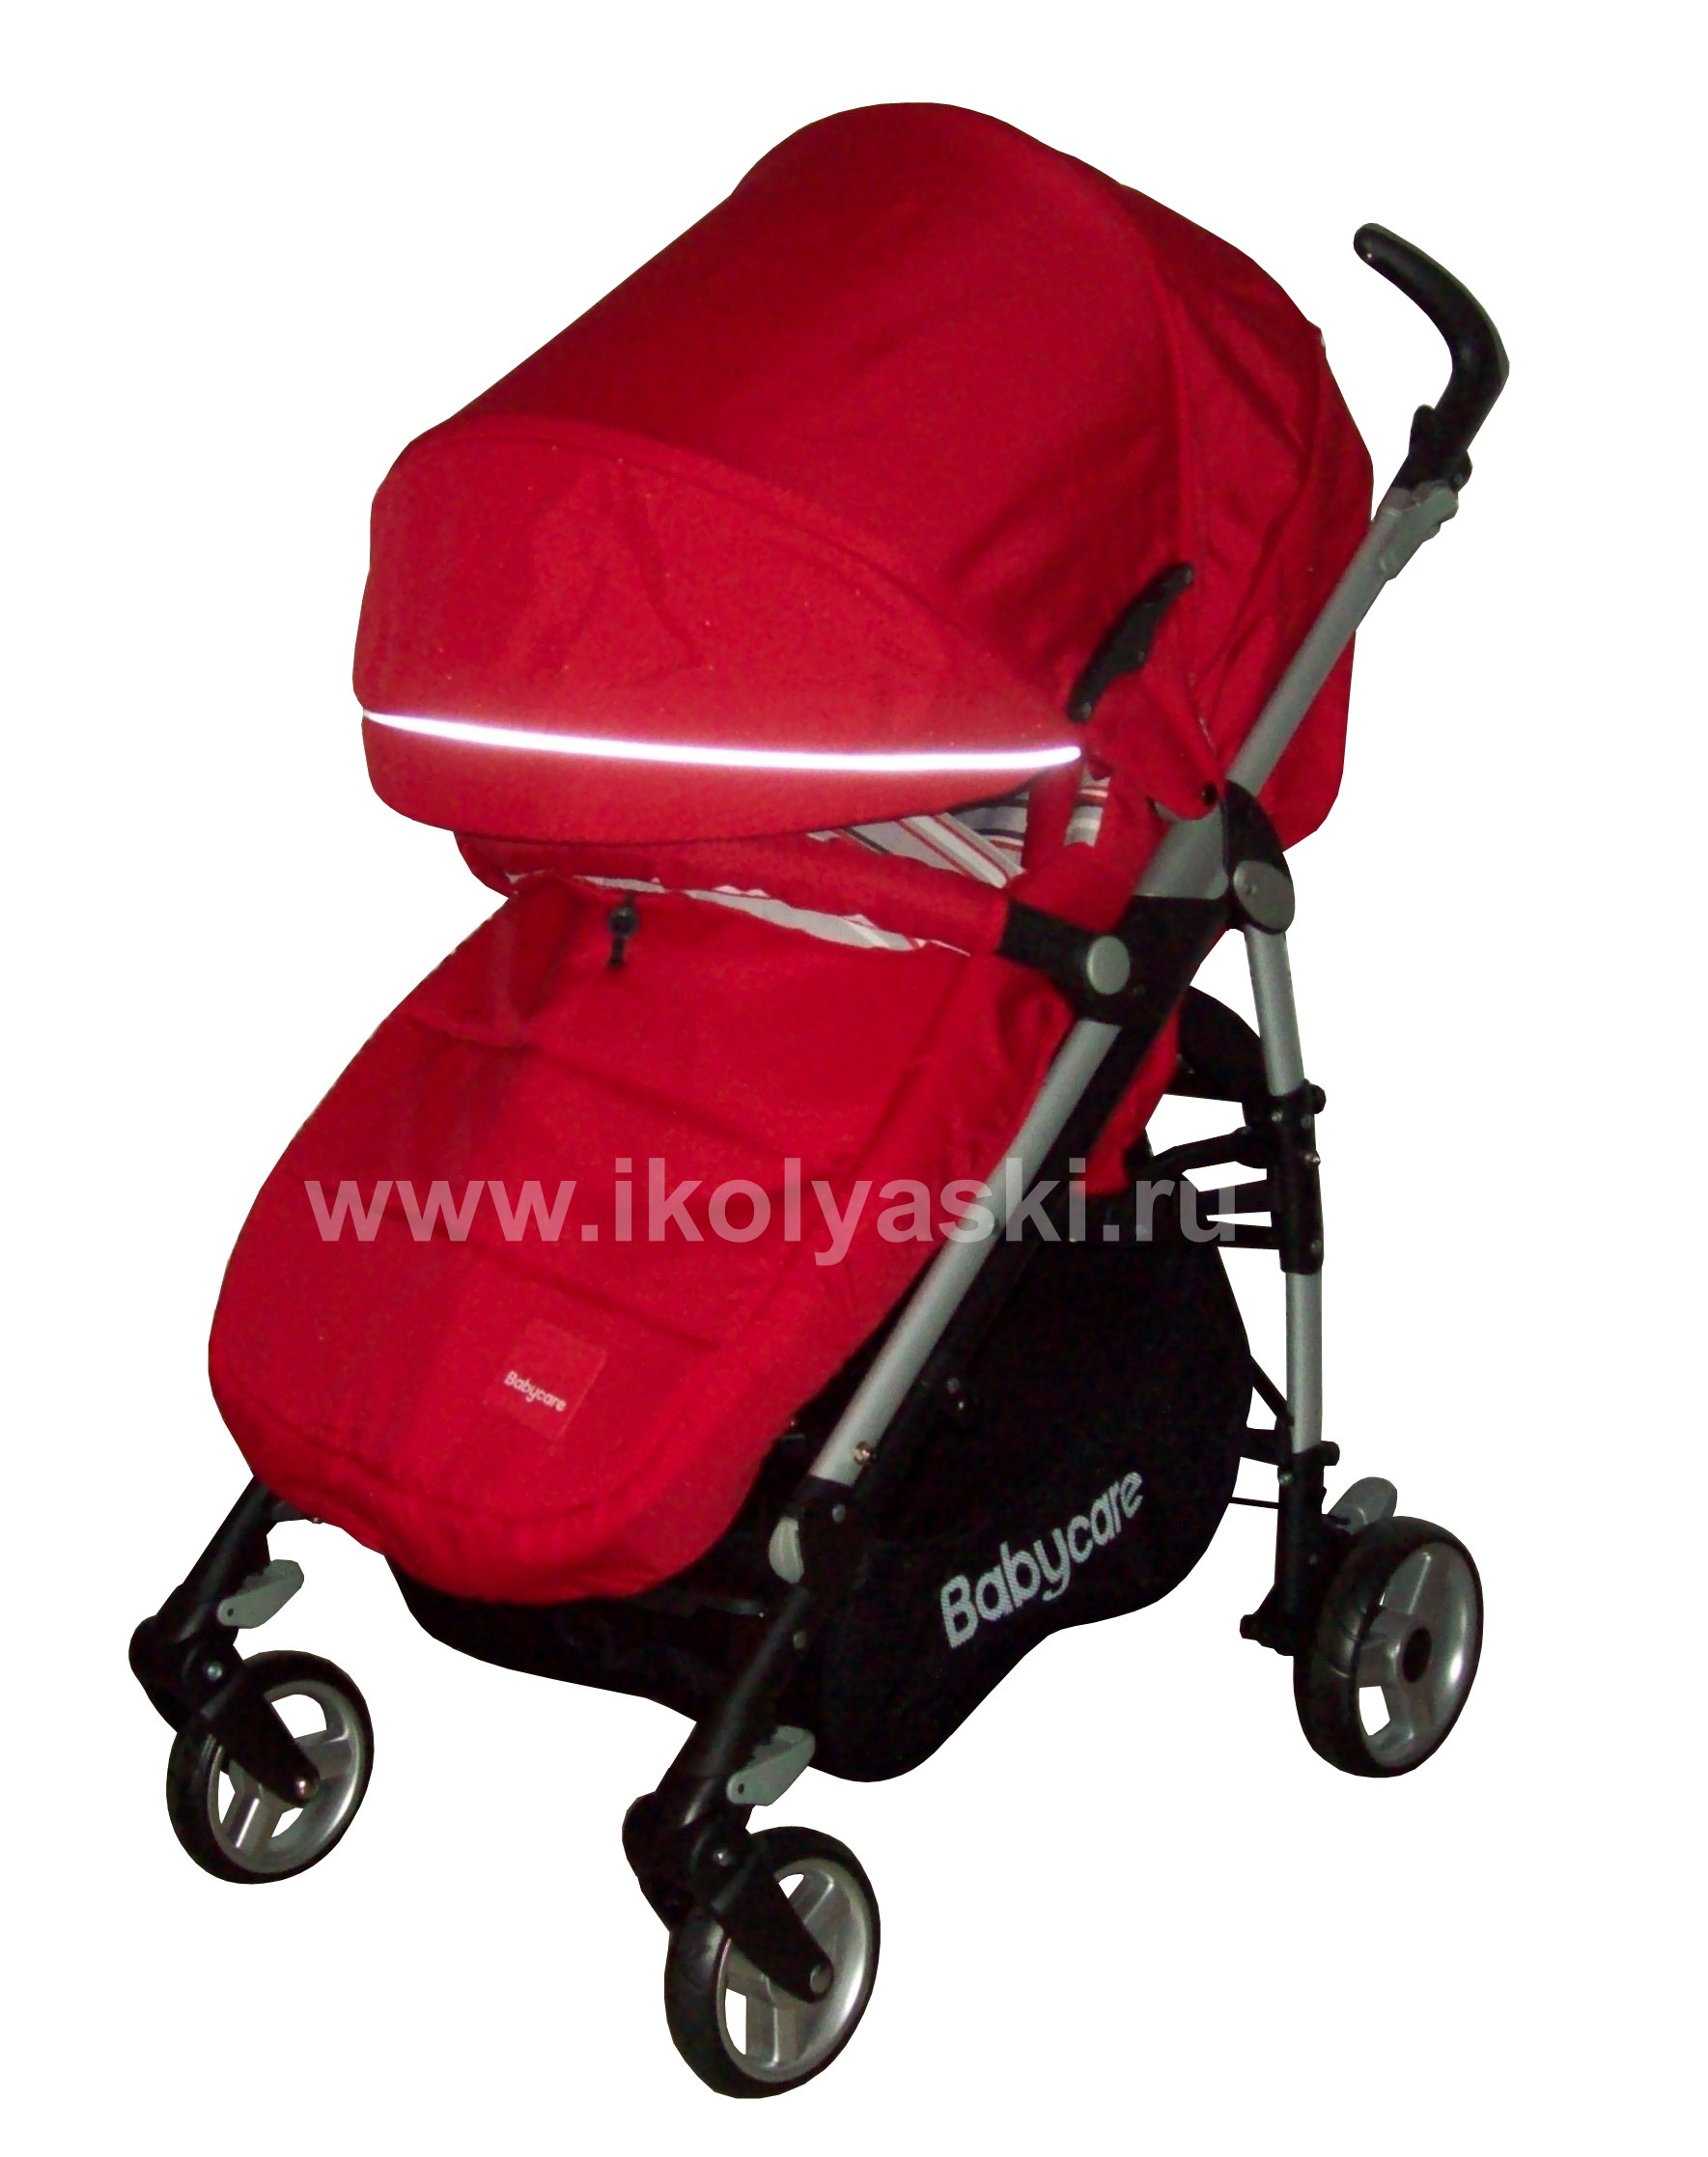 Детская коляска-трость Baby Care GT4 , Бэби Кэа GT4 ,легкая прогулочная трость, телескопическая трость  